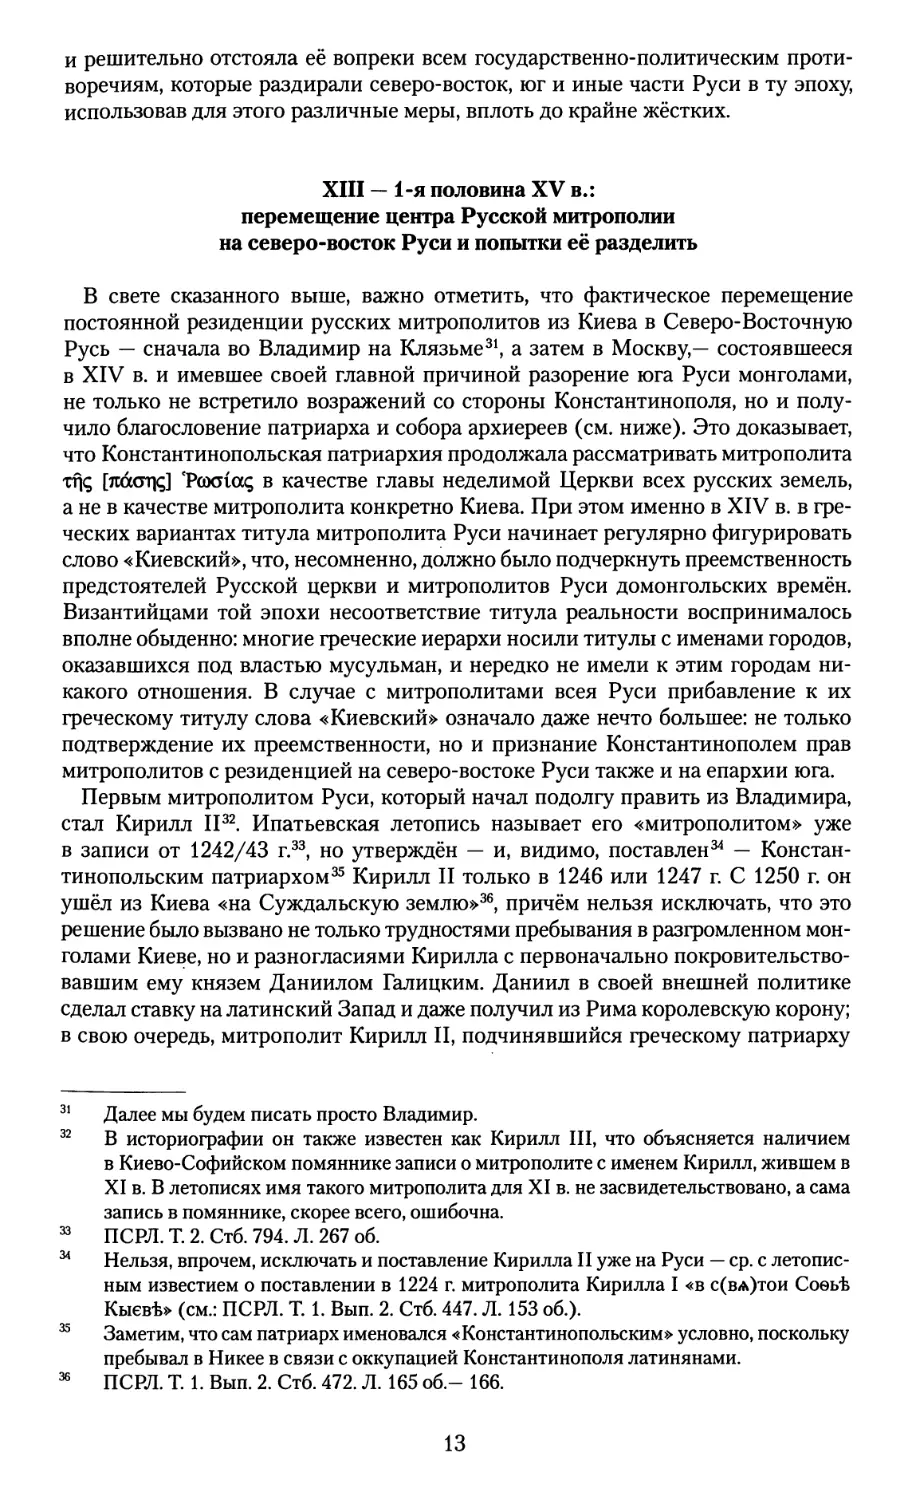 XIII — 1-я половина XV в.: перемещение центра Русской митрополии на северо-восток Руси и попытки её разделить